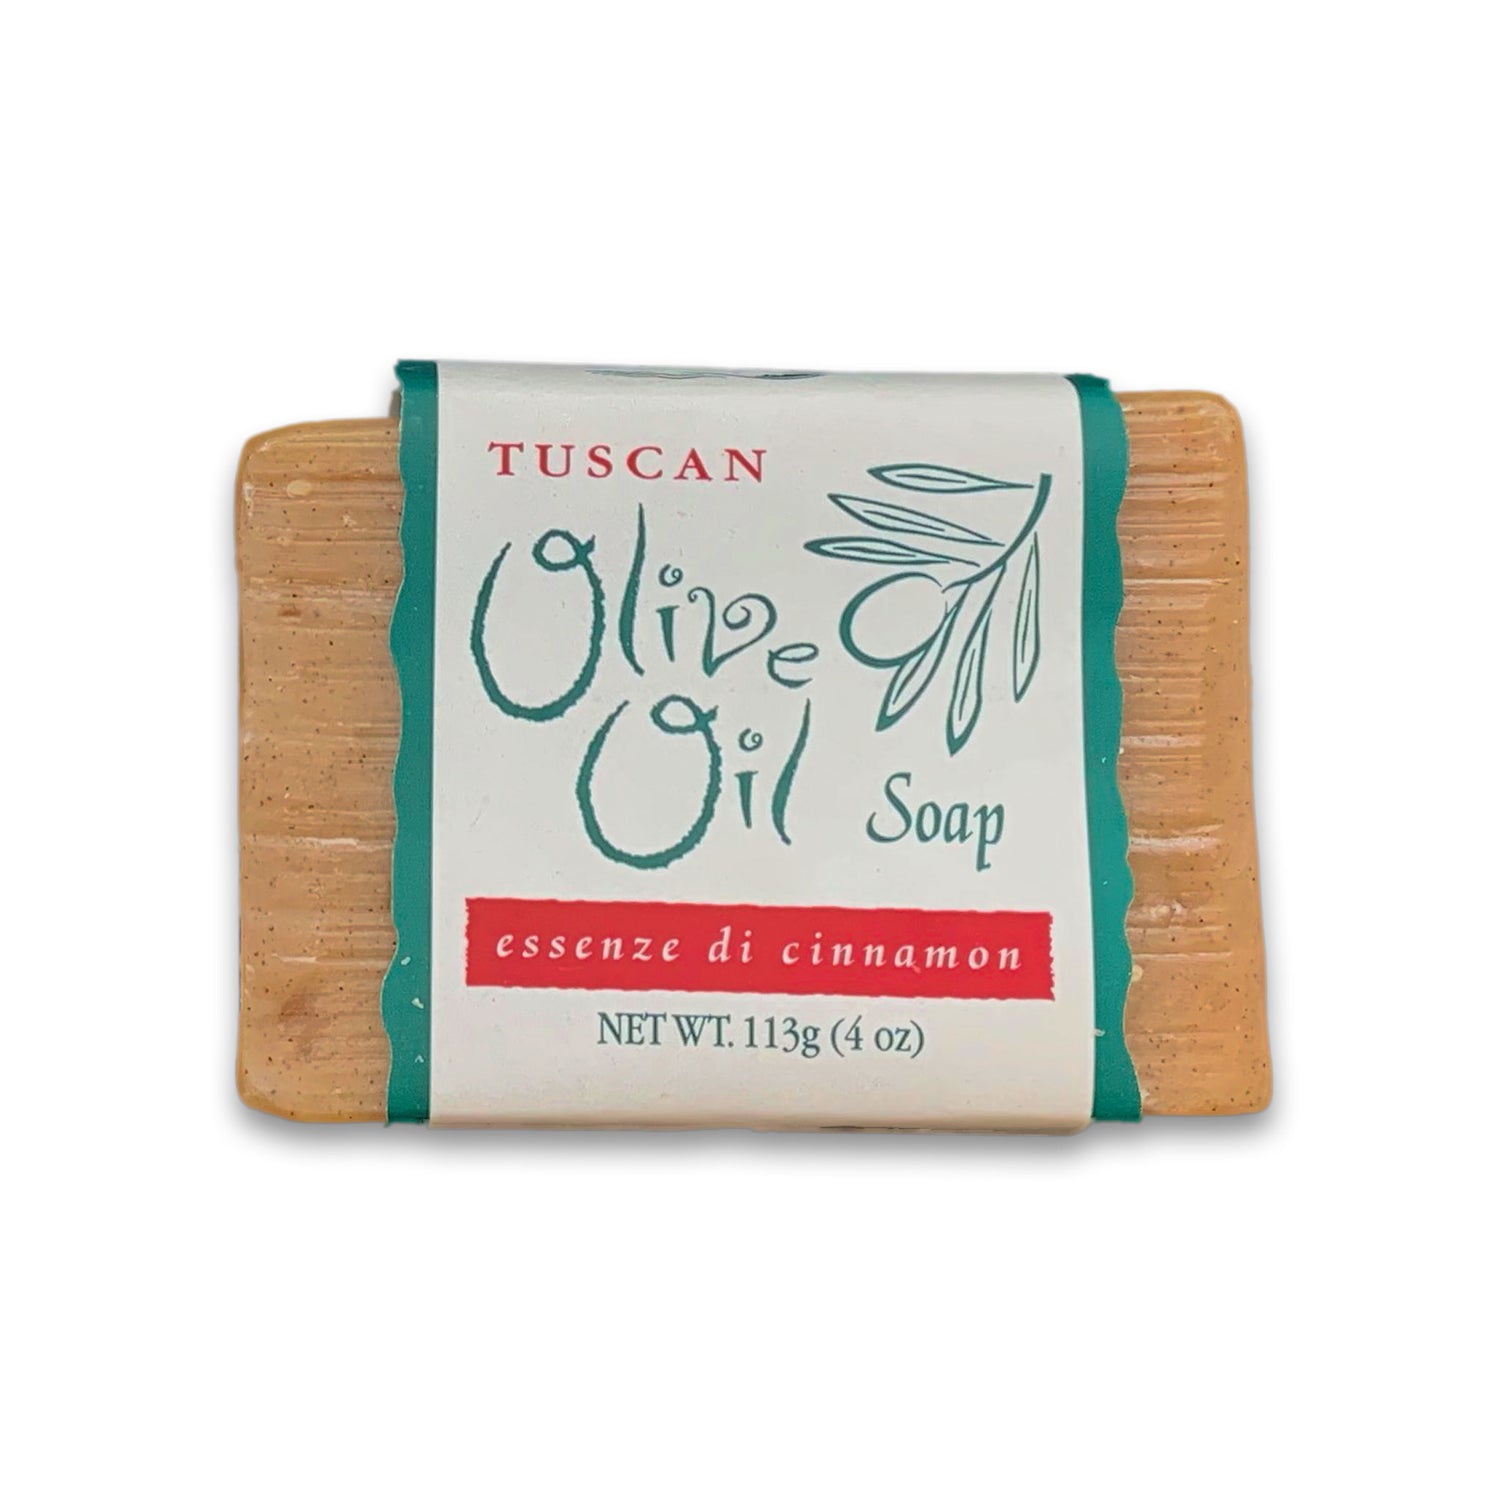 Tuscan Olive Oil Soap - Essenze di Cinnamon